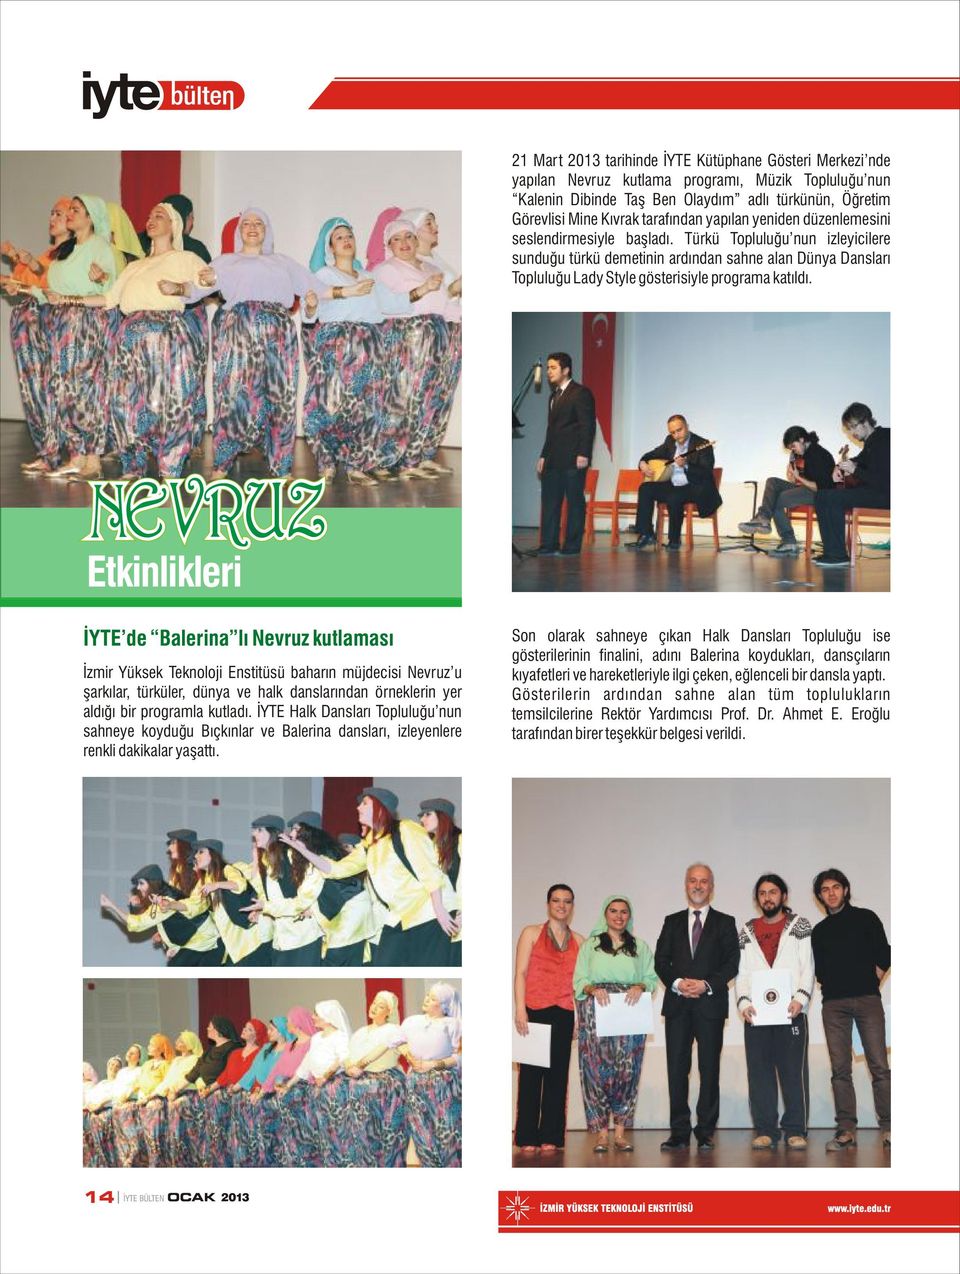 NEVRUZ Etkinlikleri İYTE de Balerina lı Nevruz kutlaması İzmir Yüksek Teknoloji Enstitüsü baharın müjdecisi Nevruz u şarkılar, türküler, dünya ve halk danslarından örneklerin yer aldığı bir programla